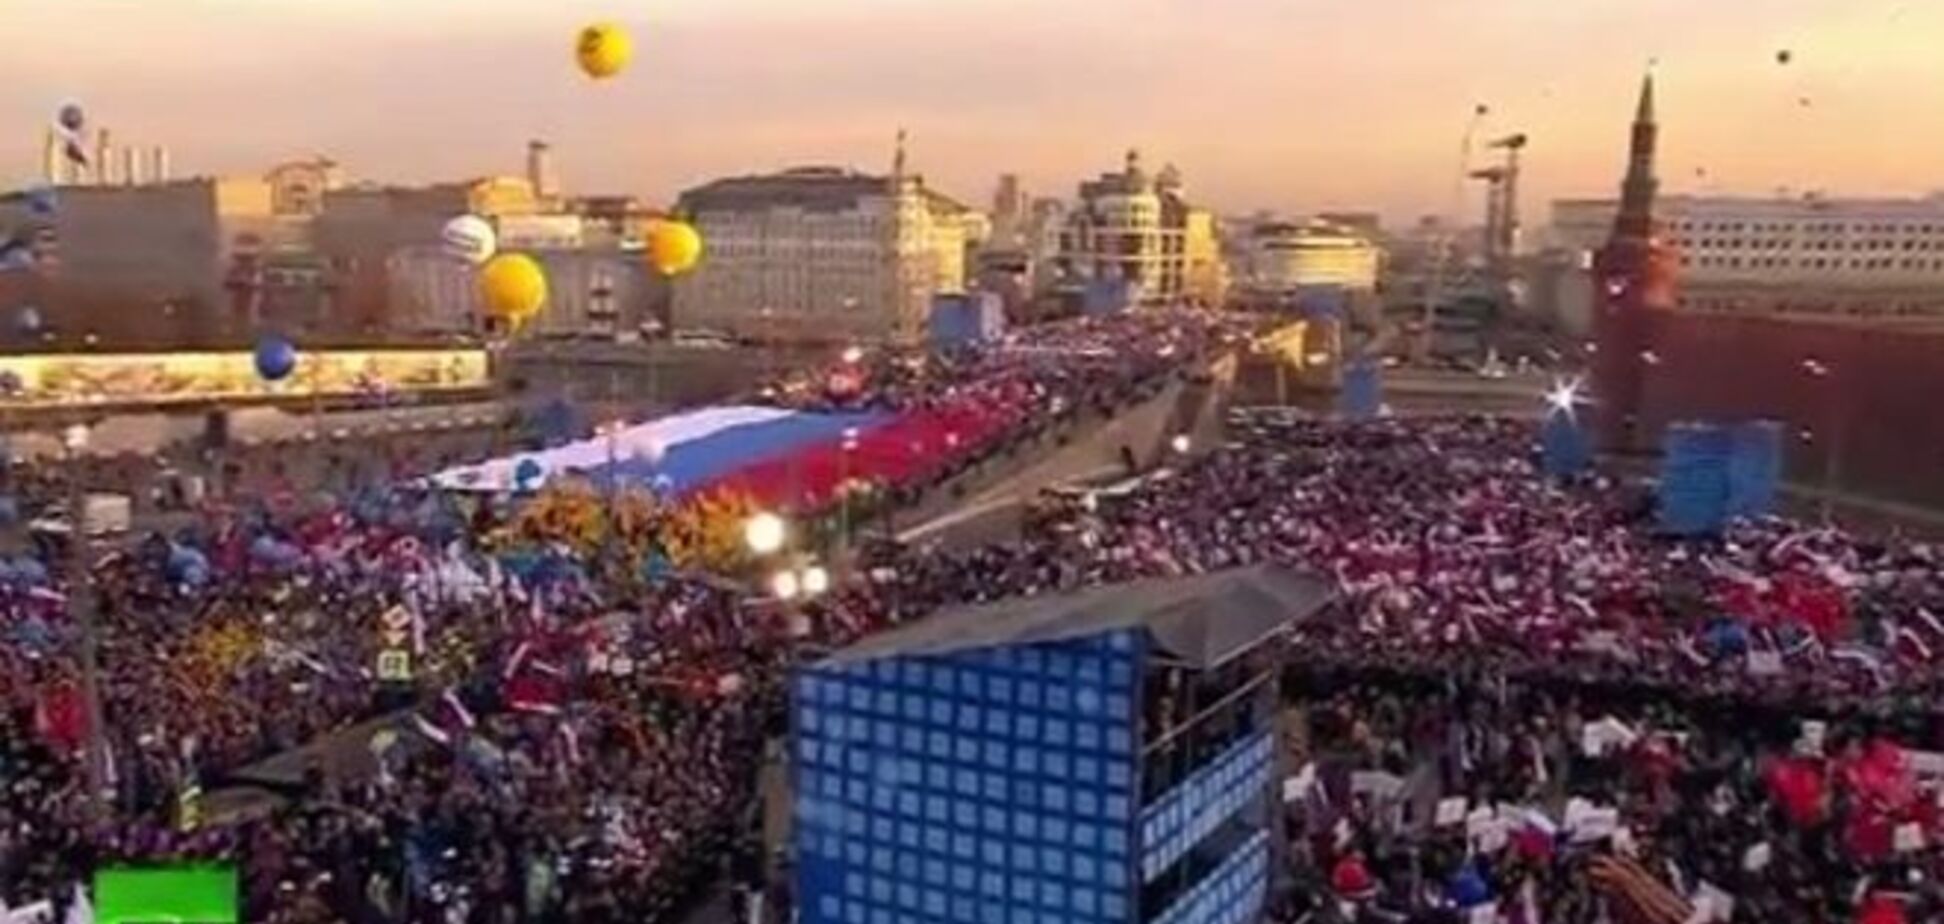 Місце вбивства Нємцова стало кремлівським шабашем святкування окупації Криму: фотофакт